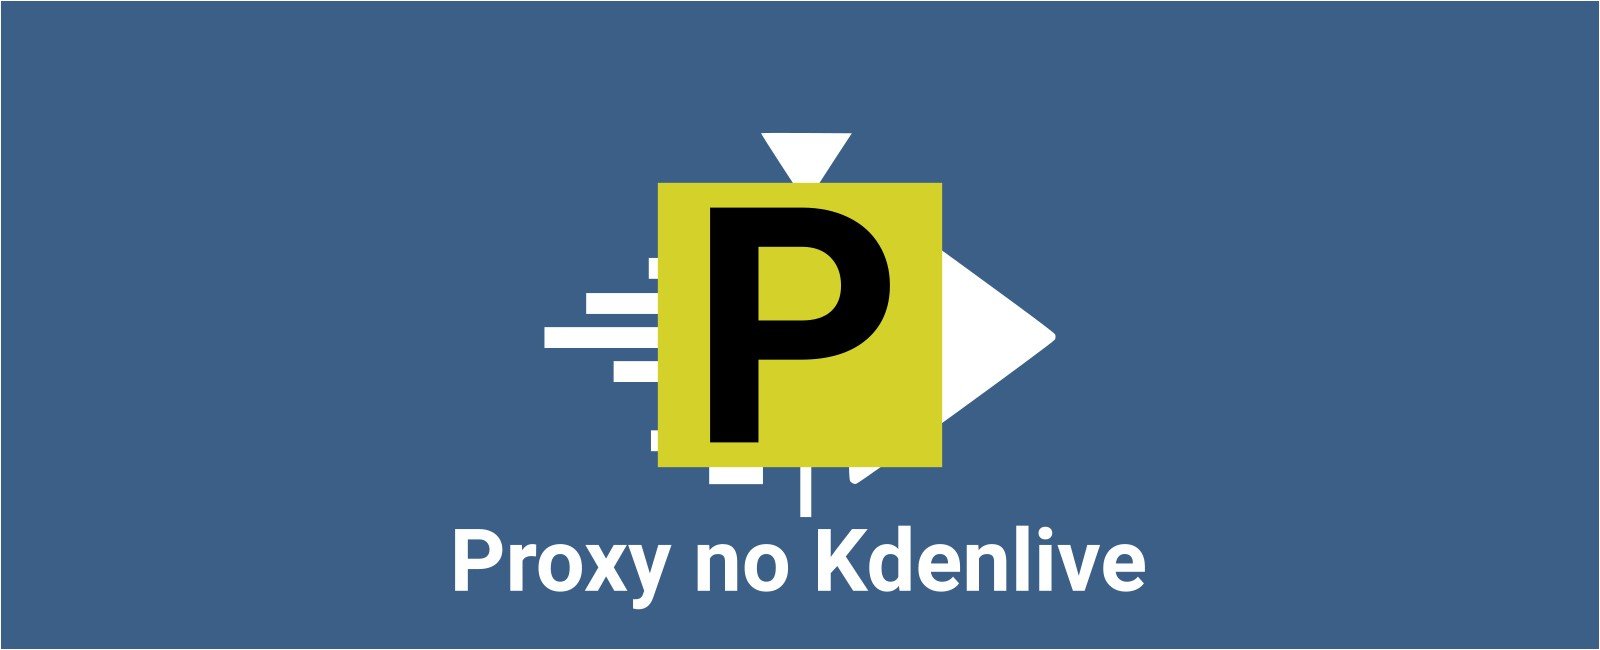 Proxy no Kdenlive